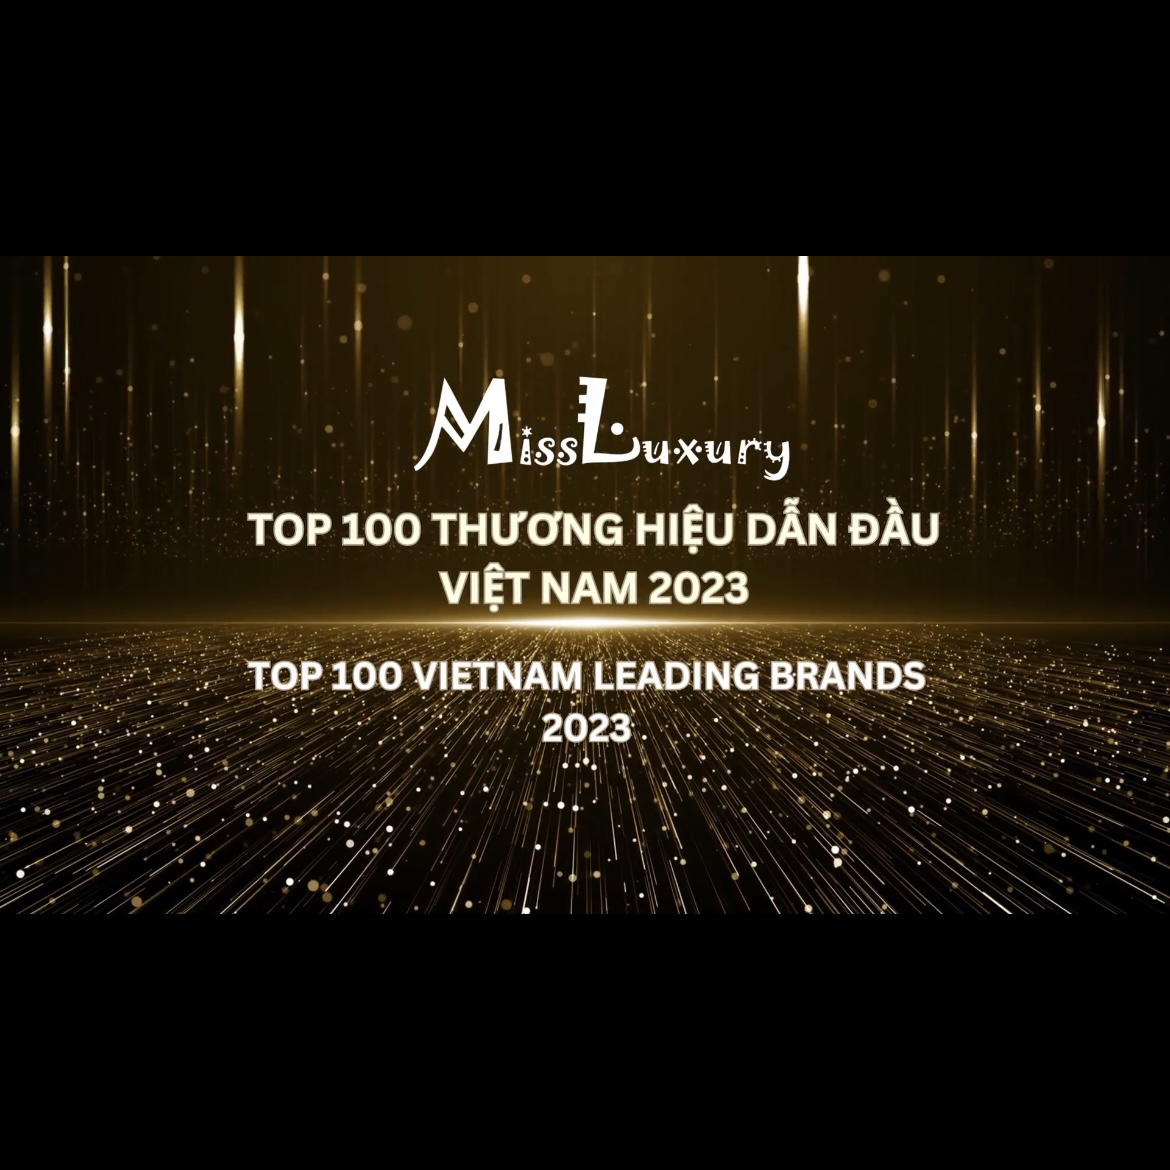 MISS LUXURY – TOP 100 THƯƠNG HIỆU DẪN ĐẦU VIỆT NAM 2023